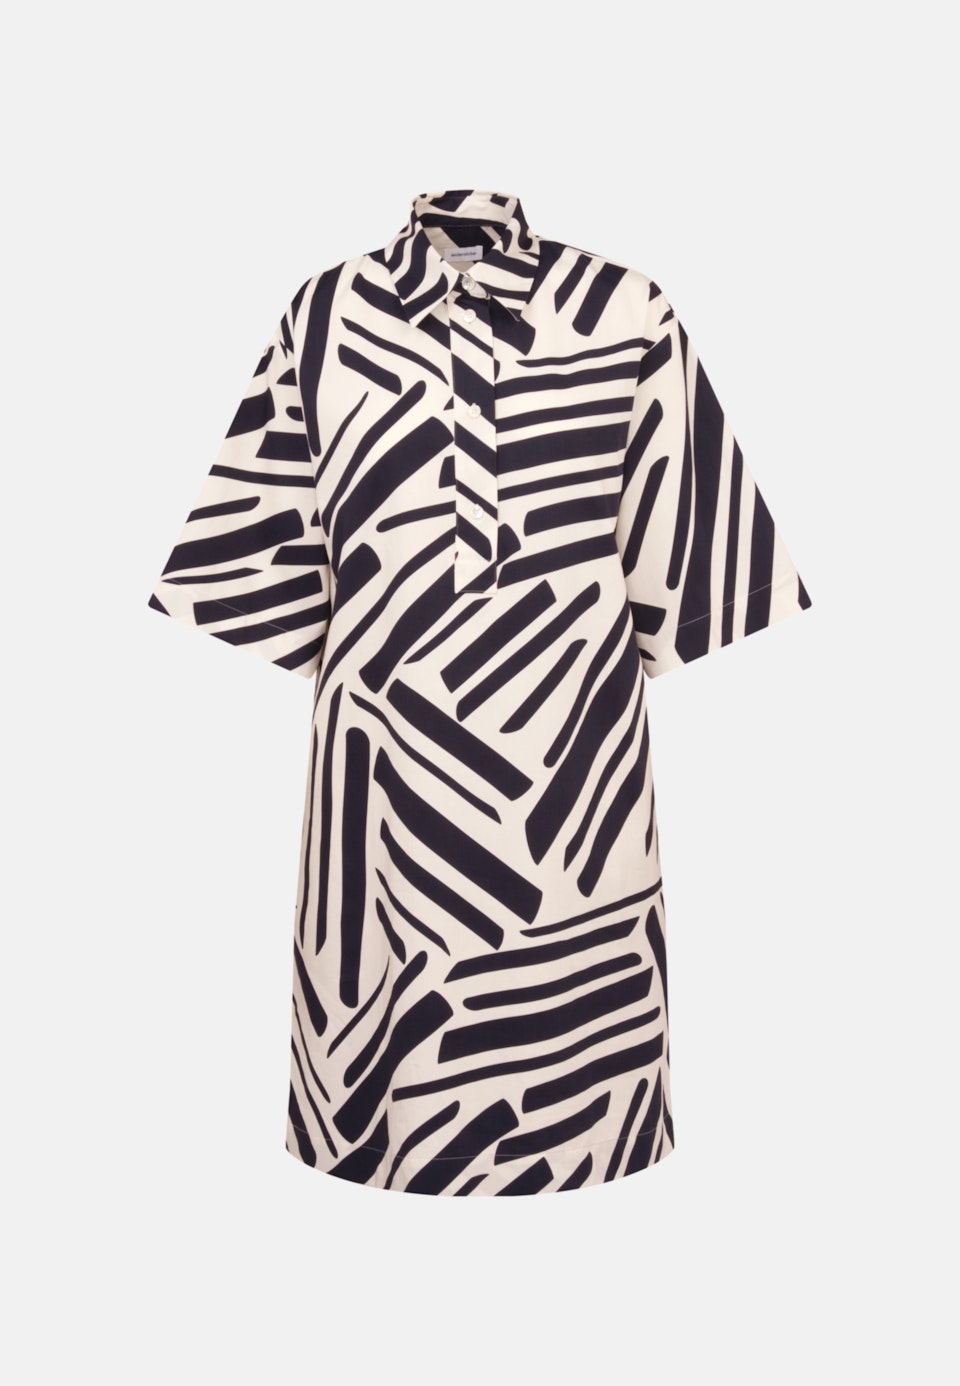 Kragen Kleid Regular in Dunkelblau |  Seidensticker Onlineshop